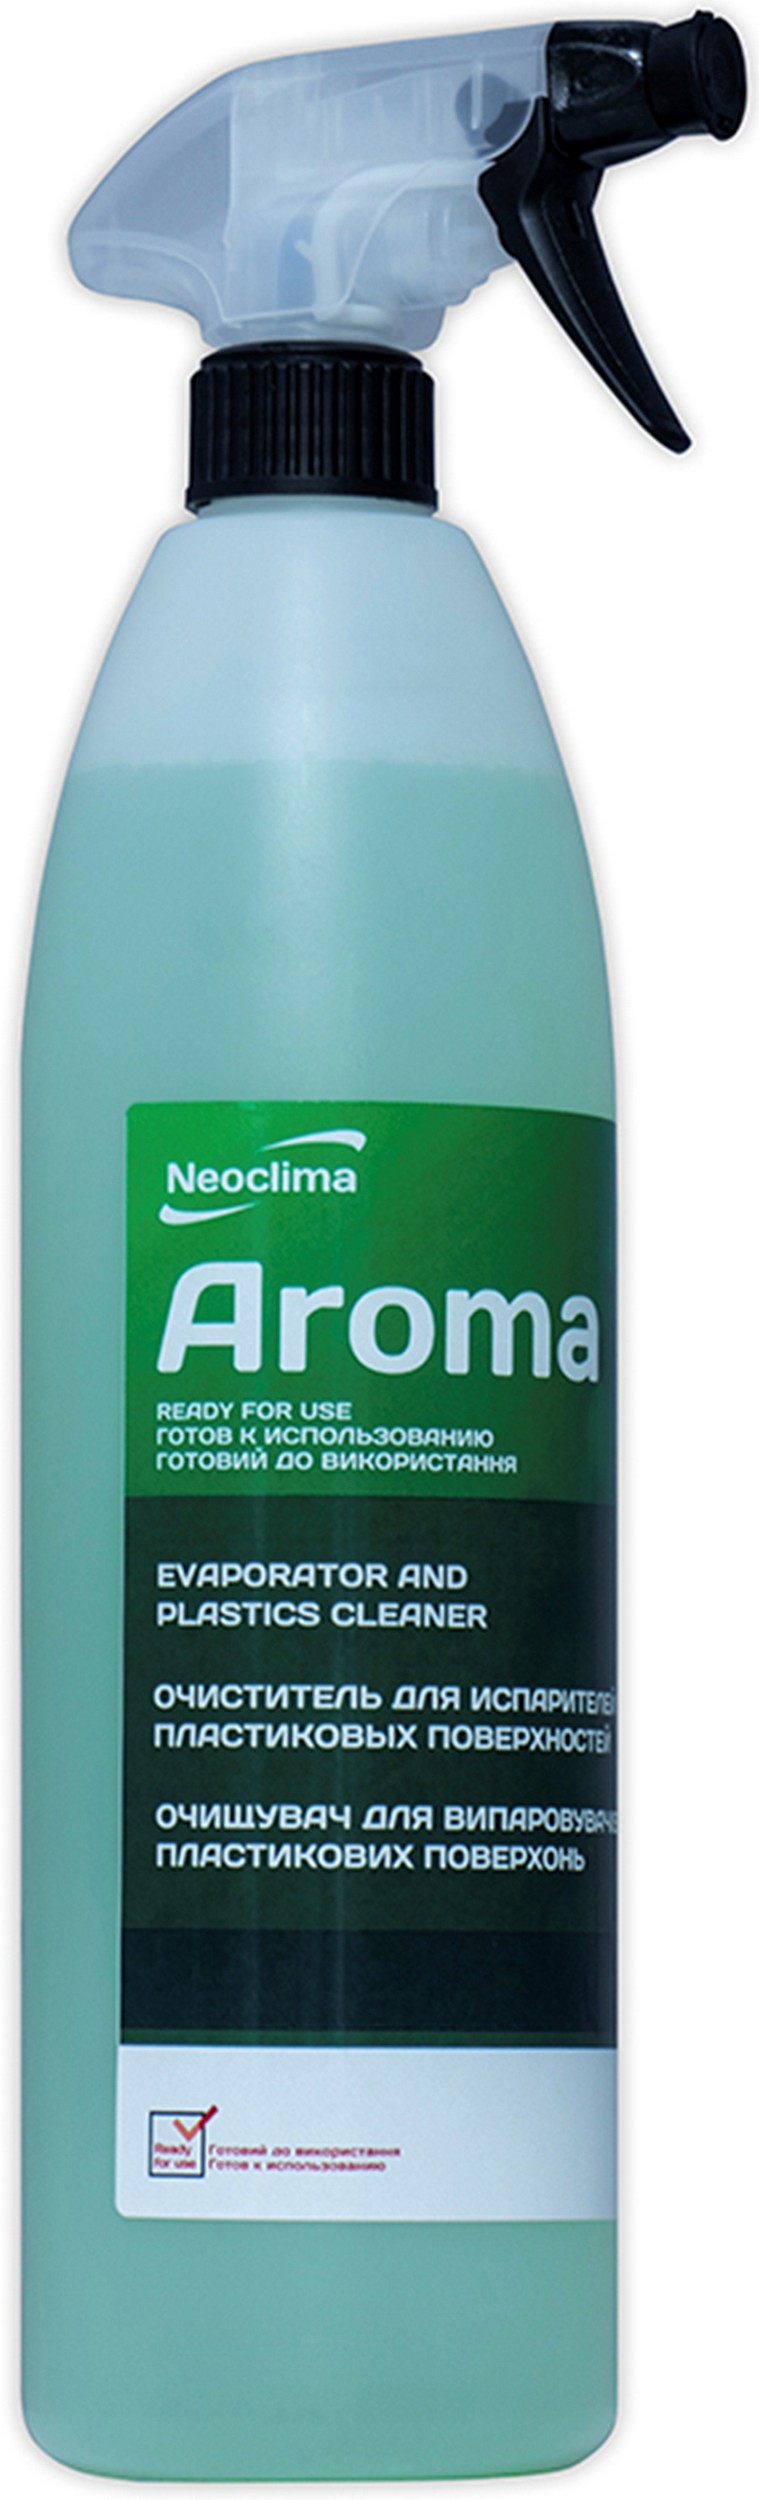 Купить очититель внутреннего блока Neoclima Aroma 1 л, спрей в Львове